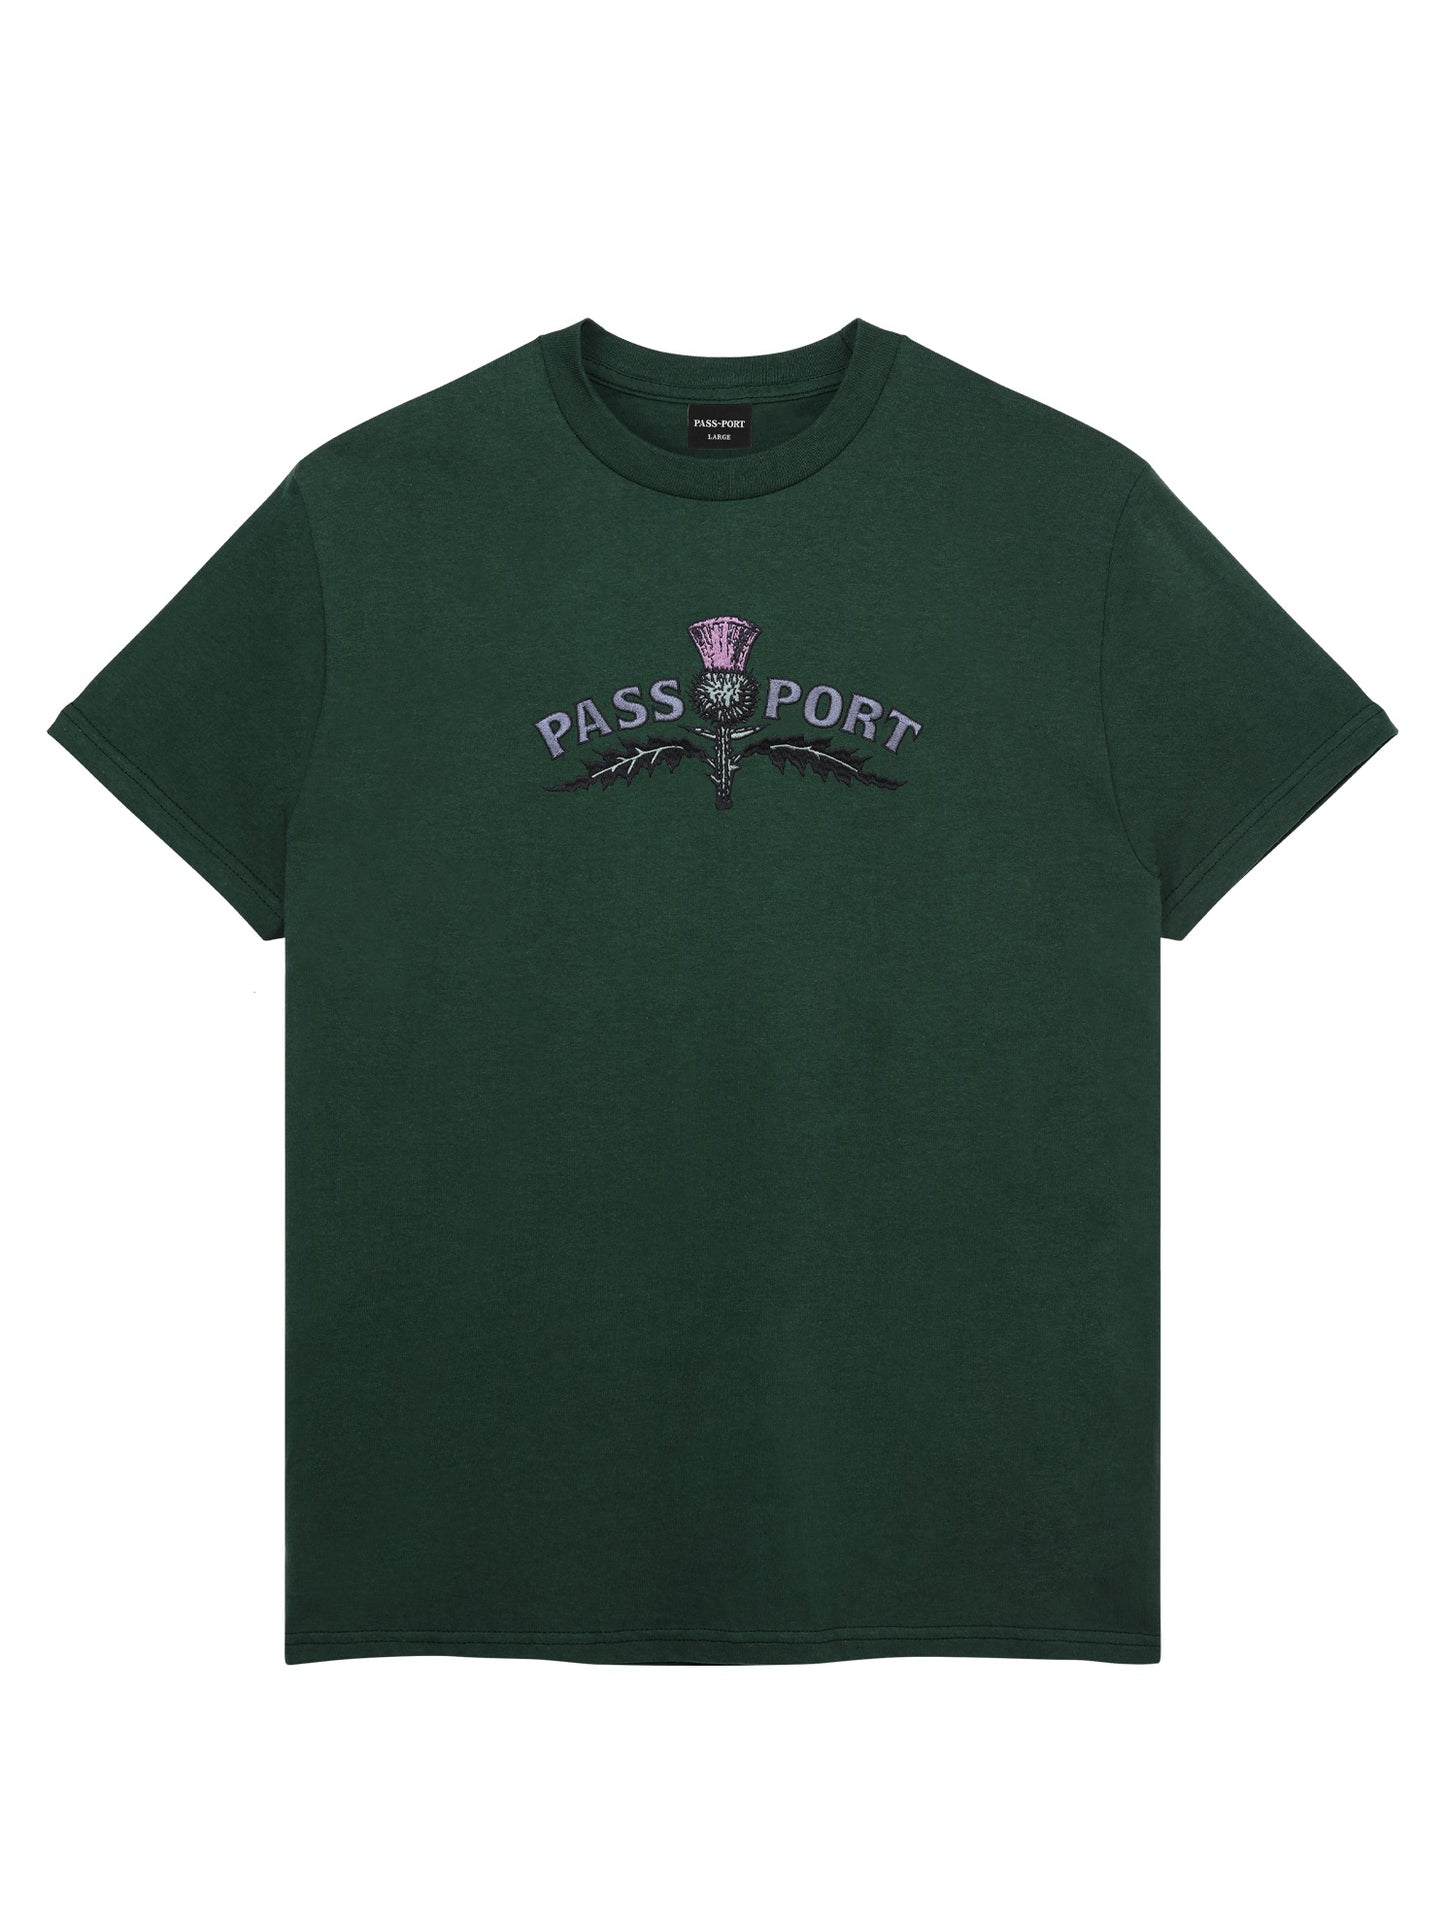 パスポート アザミ刺繍 T シャツ - フォレスト グリーン